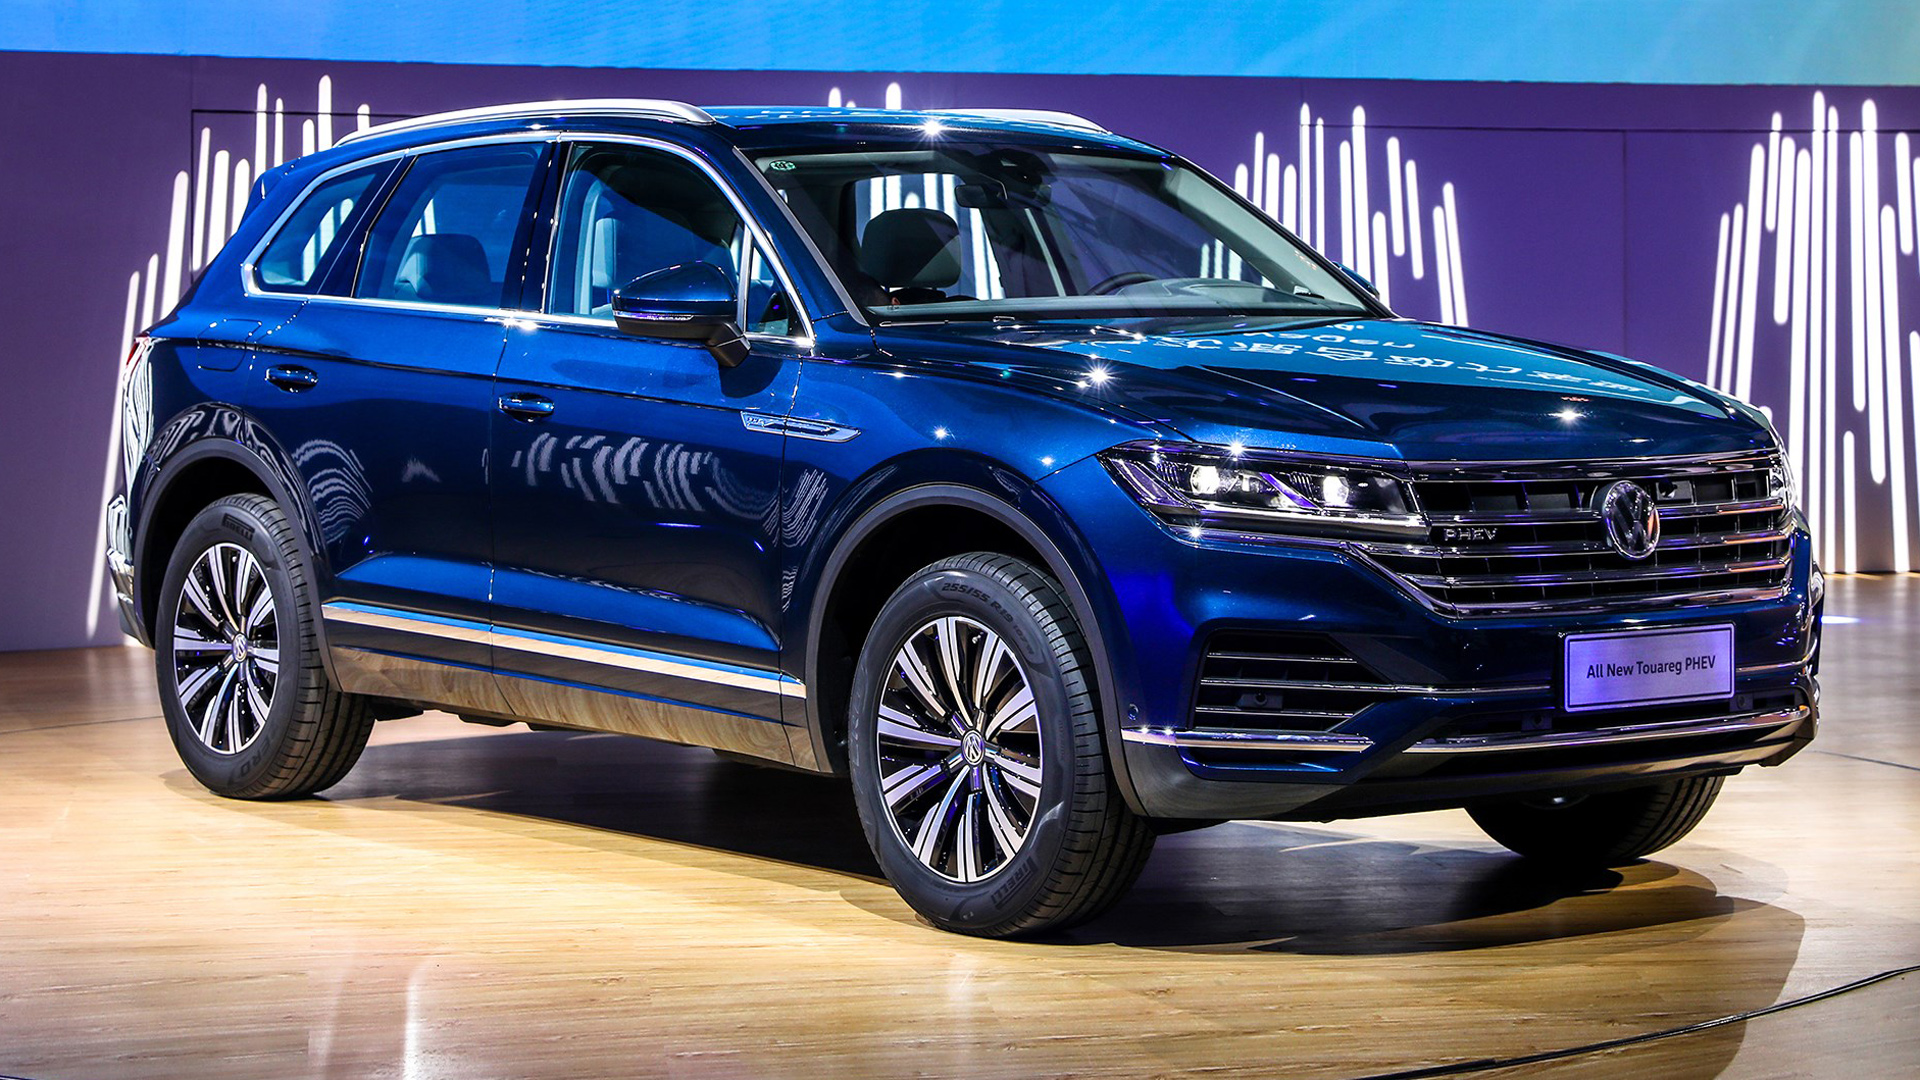 Volkswagen Touareg PHEV 2019